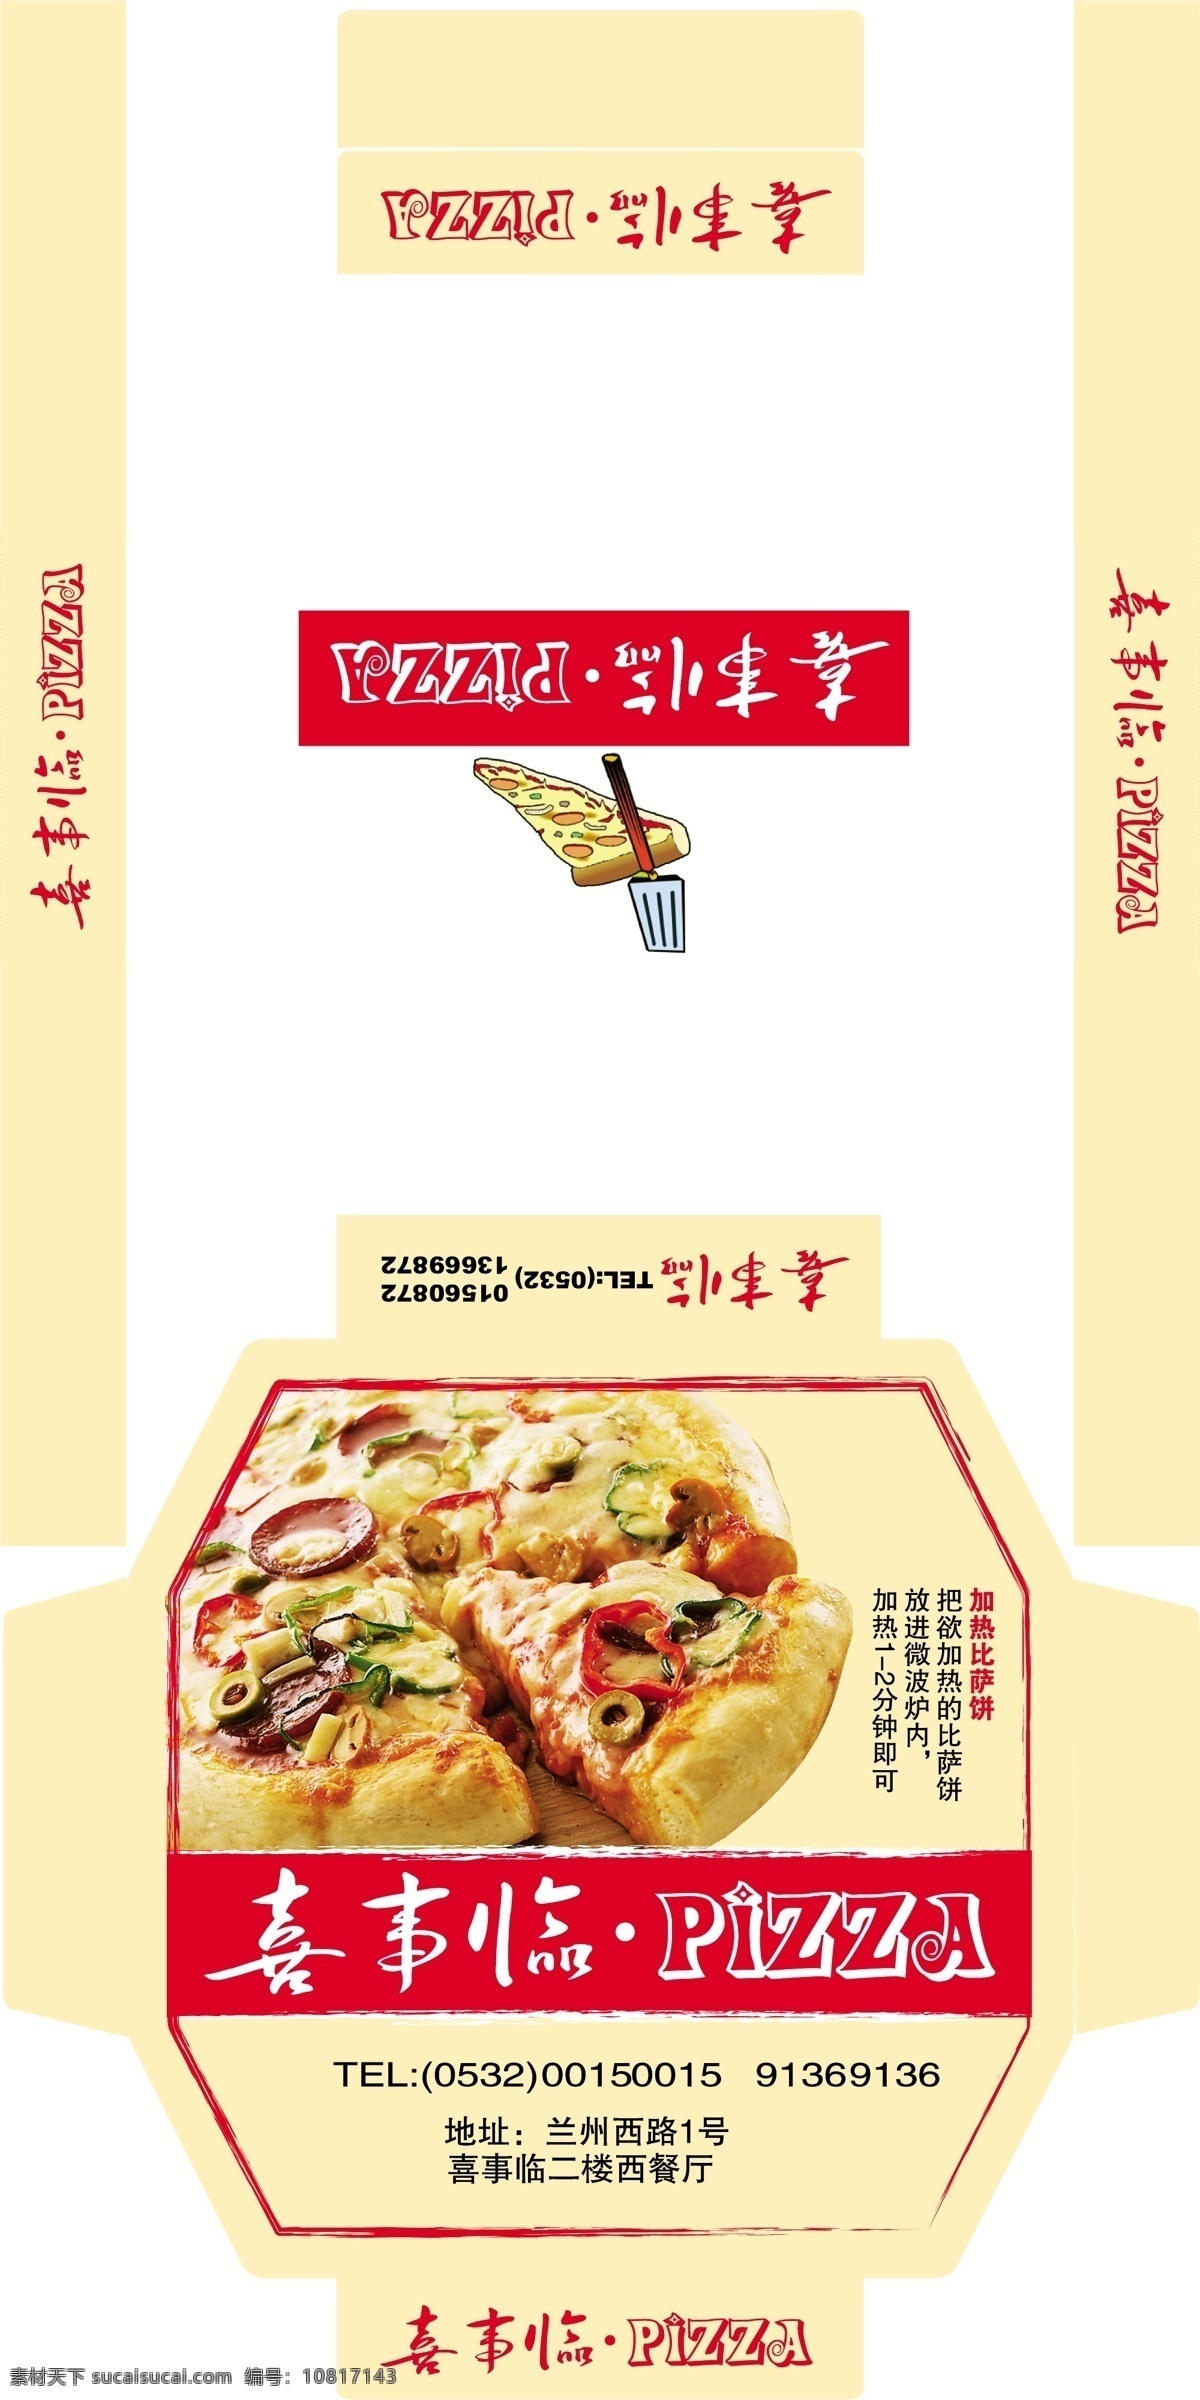 披萨盒子披萨 包装盒 食品 纸箱 红盒 礼品盒 食品盒 设计稿件 包装设计 白色